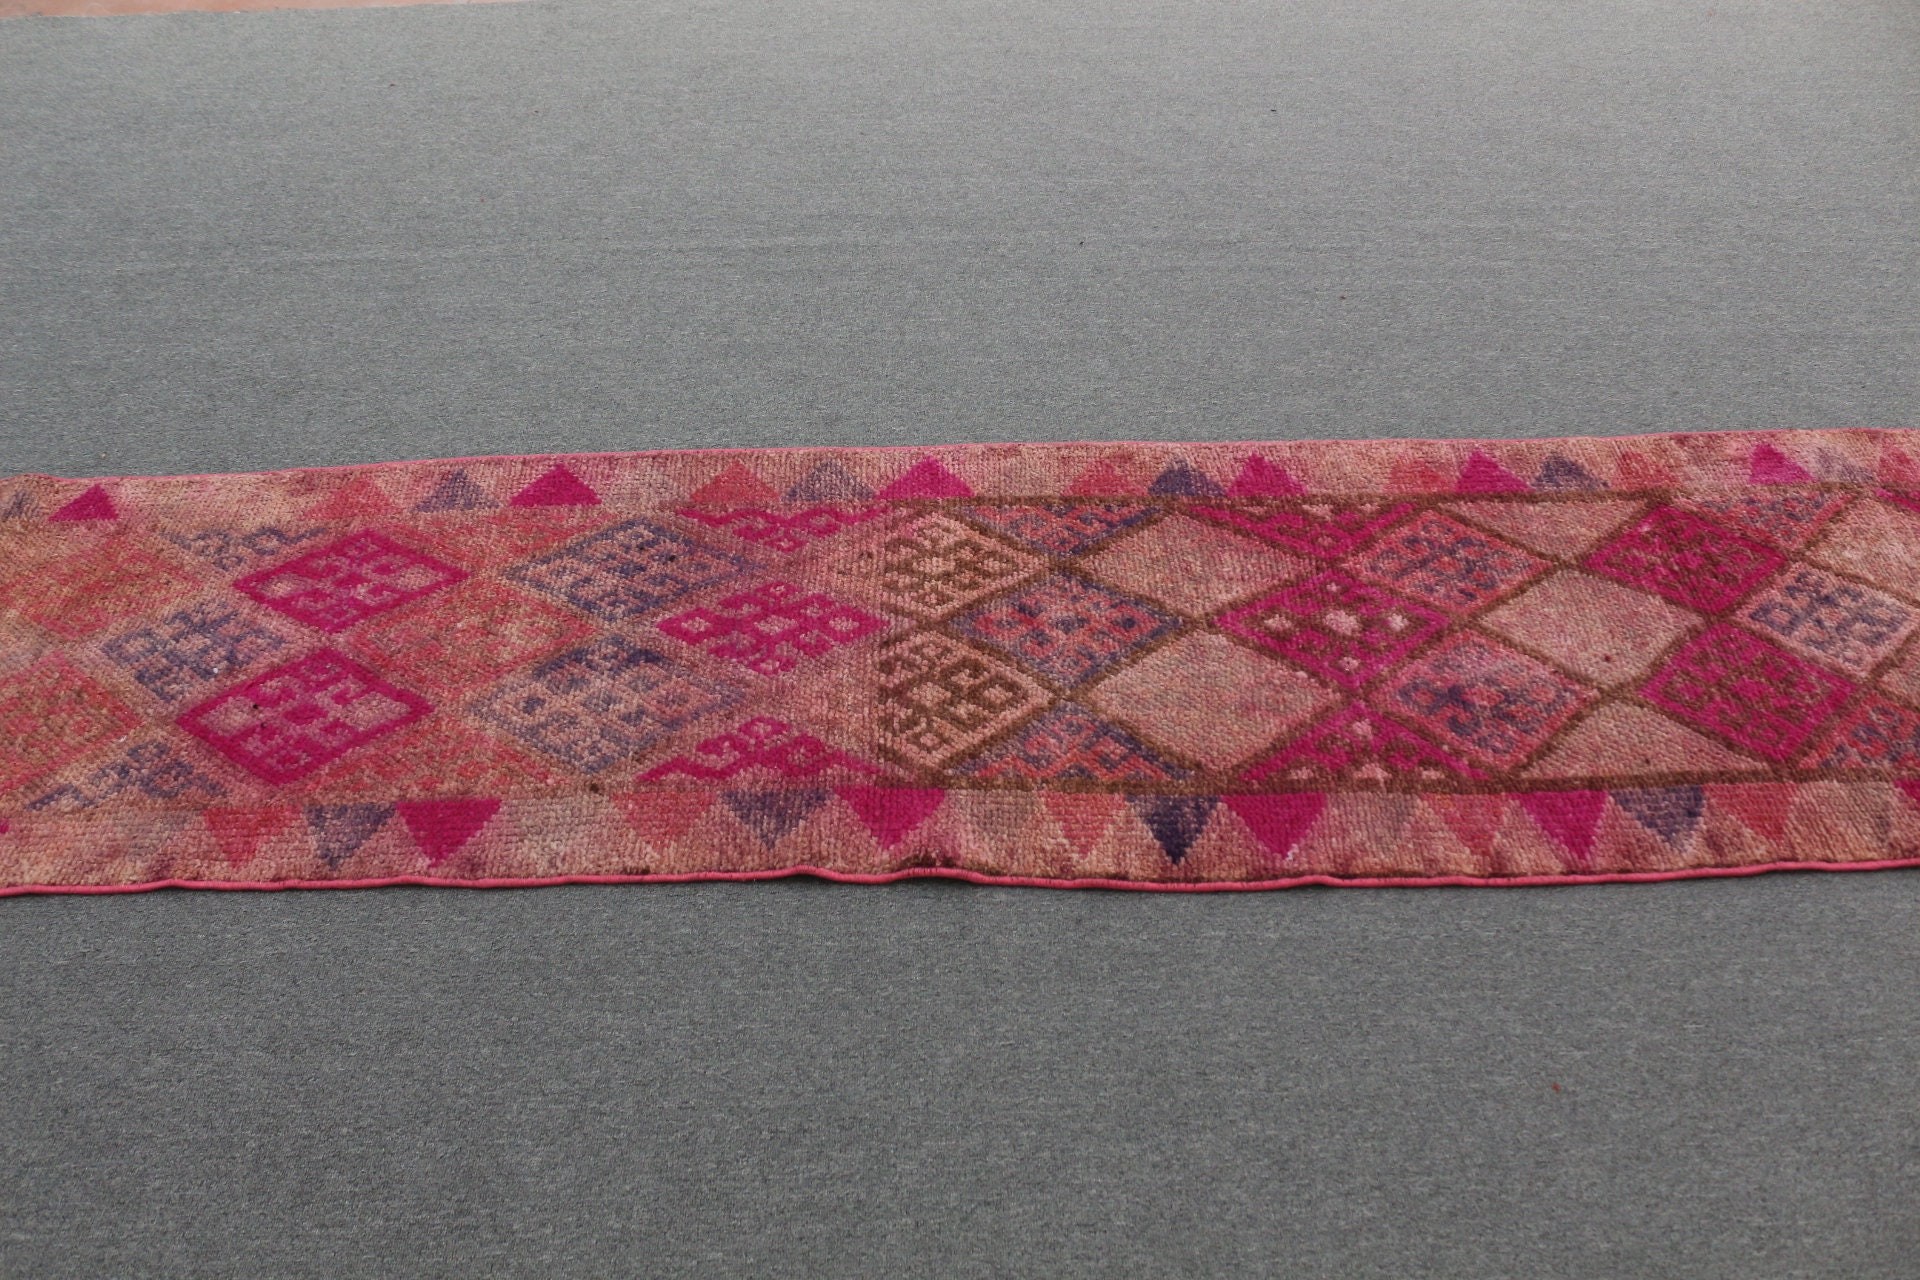 Vintage Rug, Pink Oriental Rug, Antique Rugs, Cool Rugs, Hallway Rug, Turkish Rugs, Muted Rugs, Corridor Rugs, 2.4x13.4 ft Runner Rug